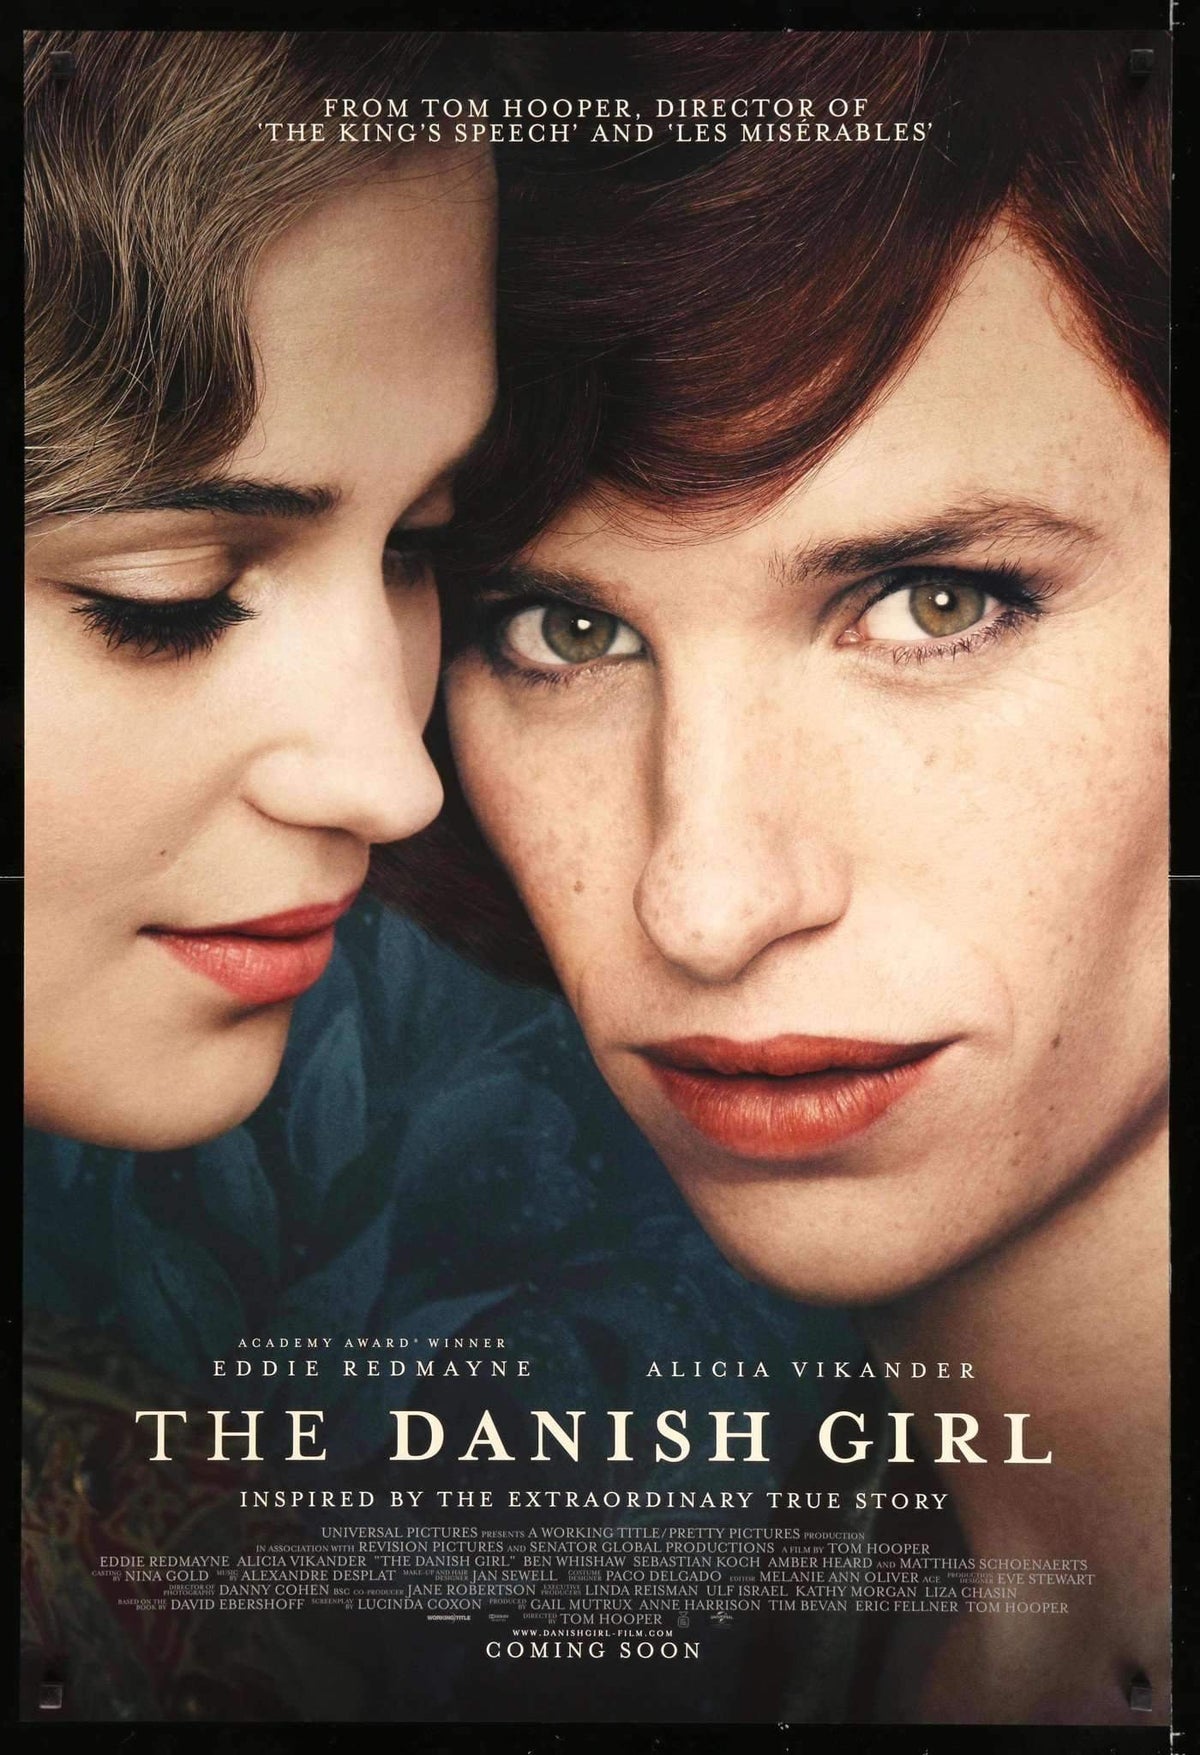 Danish Girl (2015) original movie poster for sale at Original Film Art